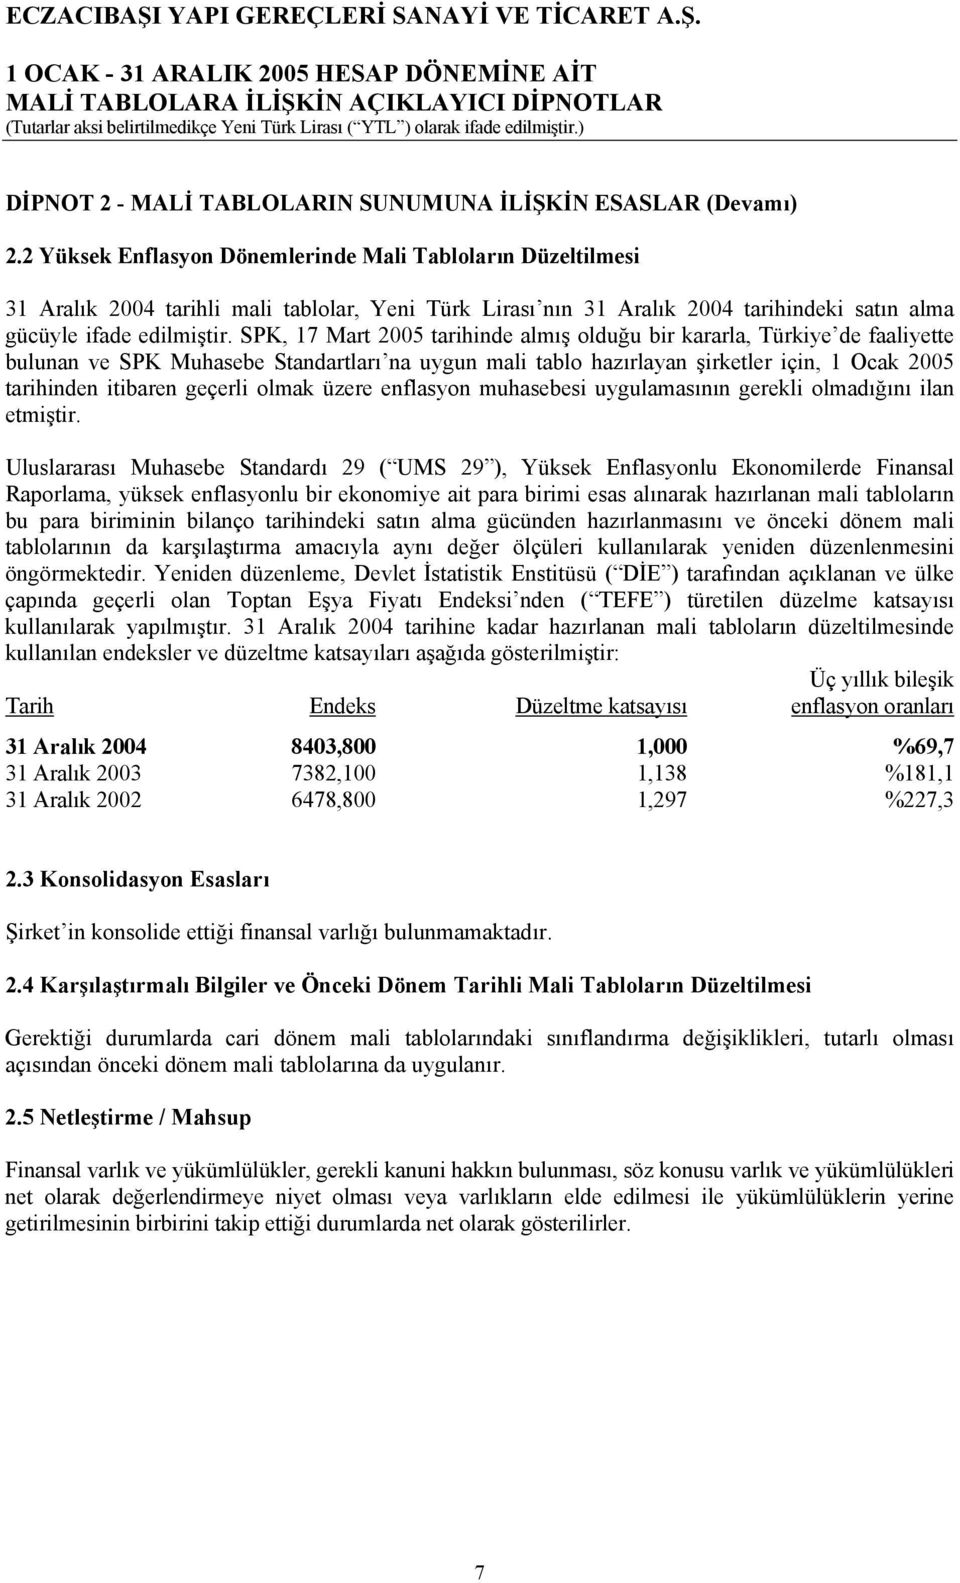 SPK, 17 Mart 2005 tarihinde almış olduğu bir kararla, Türkiye de faaliyette bulunan ve SPK Muhasebe Standartları na uygun mali tablo hazırlayan şirketler için, 1 Ocak 2005 tarihinden itibaren geçerli